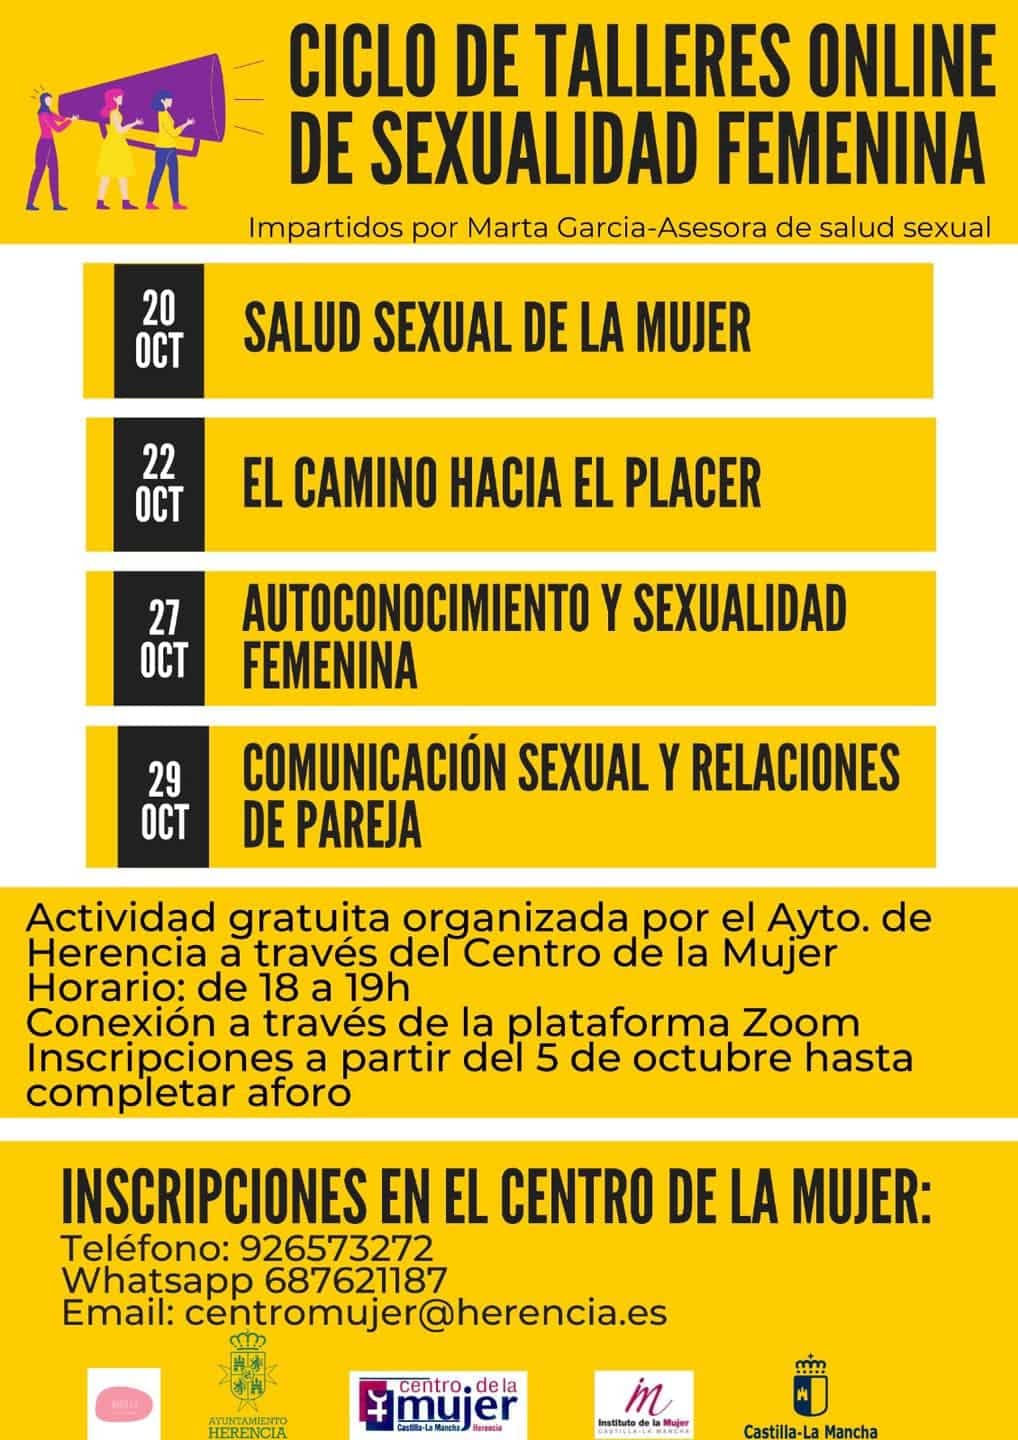 Ciclo de Talleres online sobre sexualidad femenina en Herencia 3